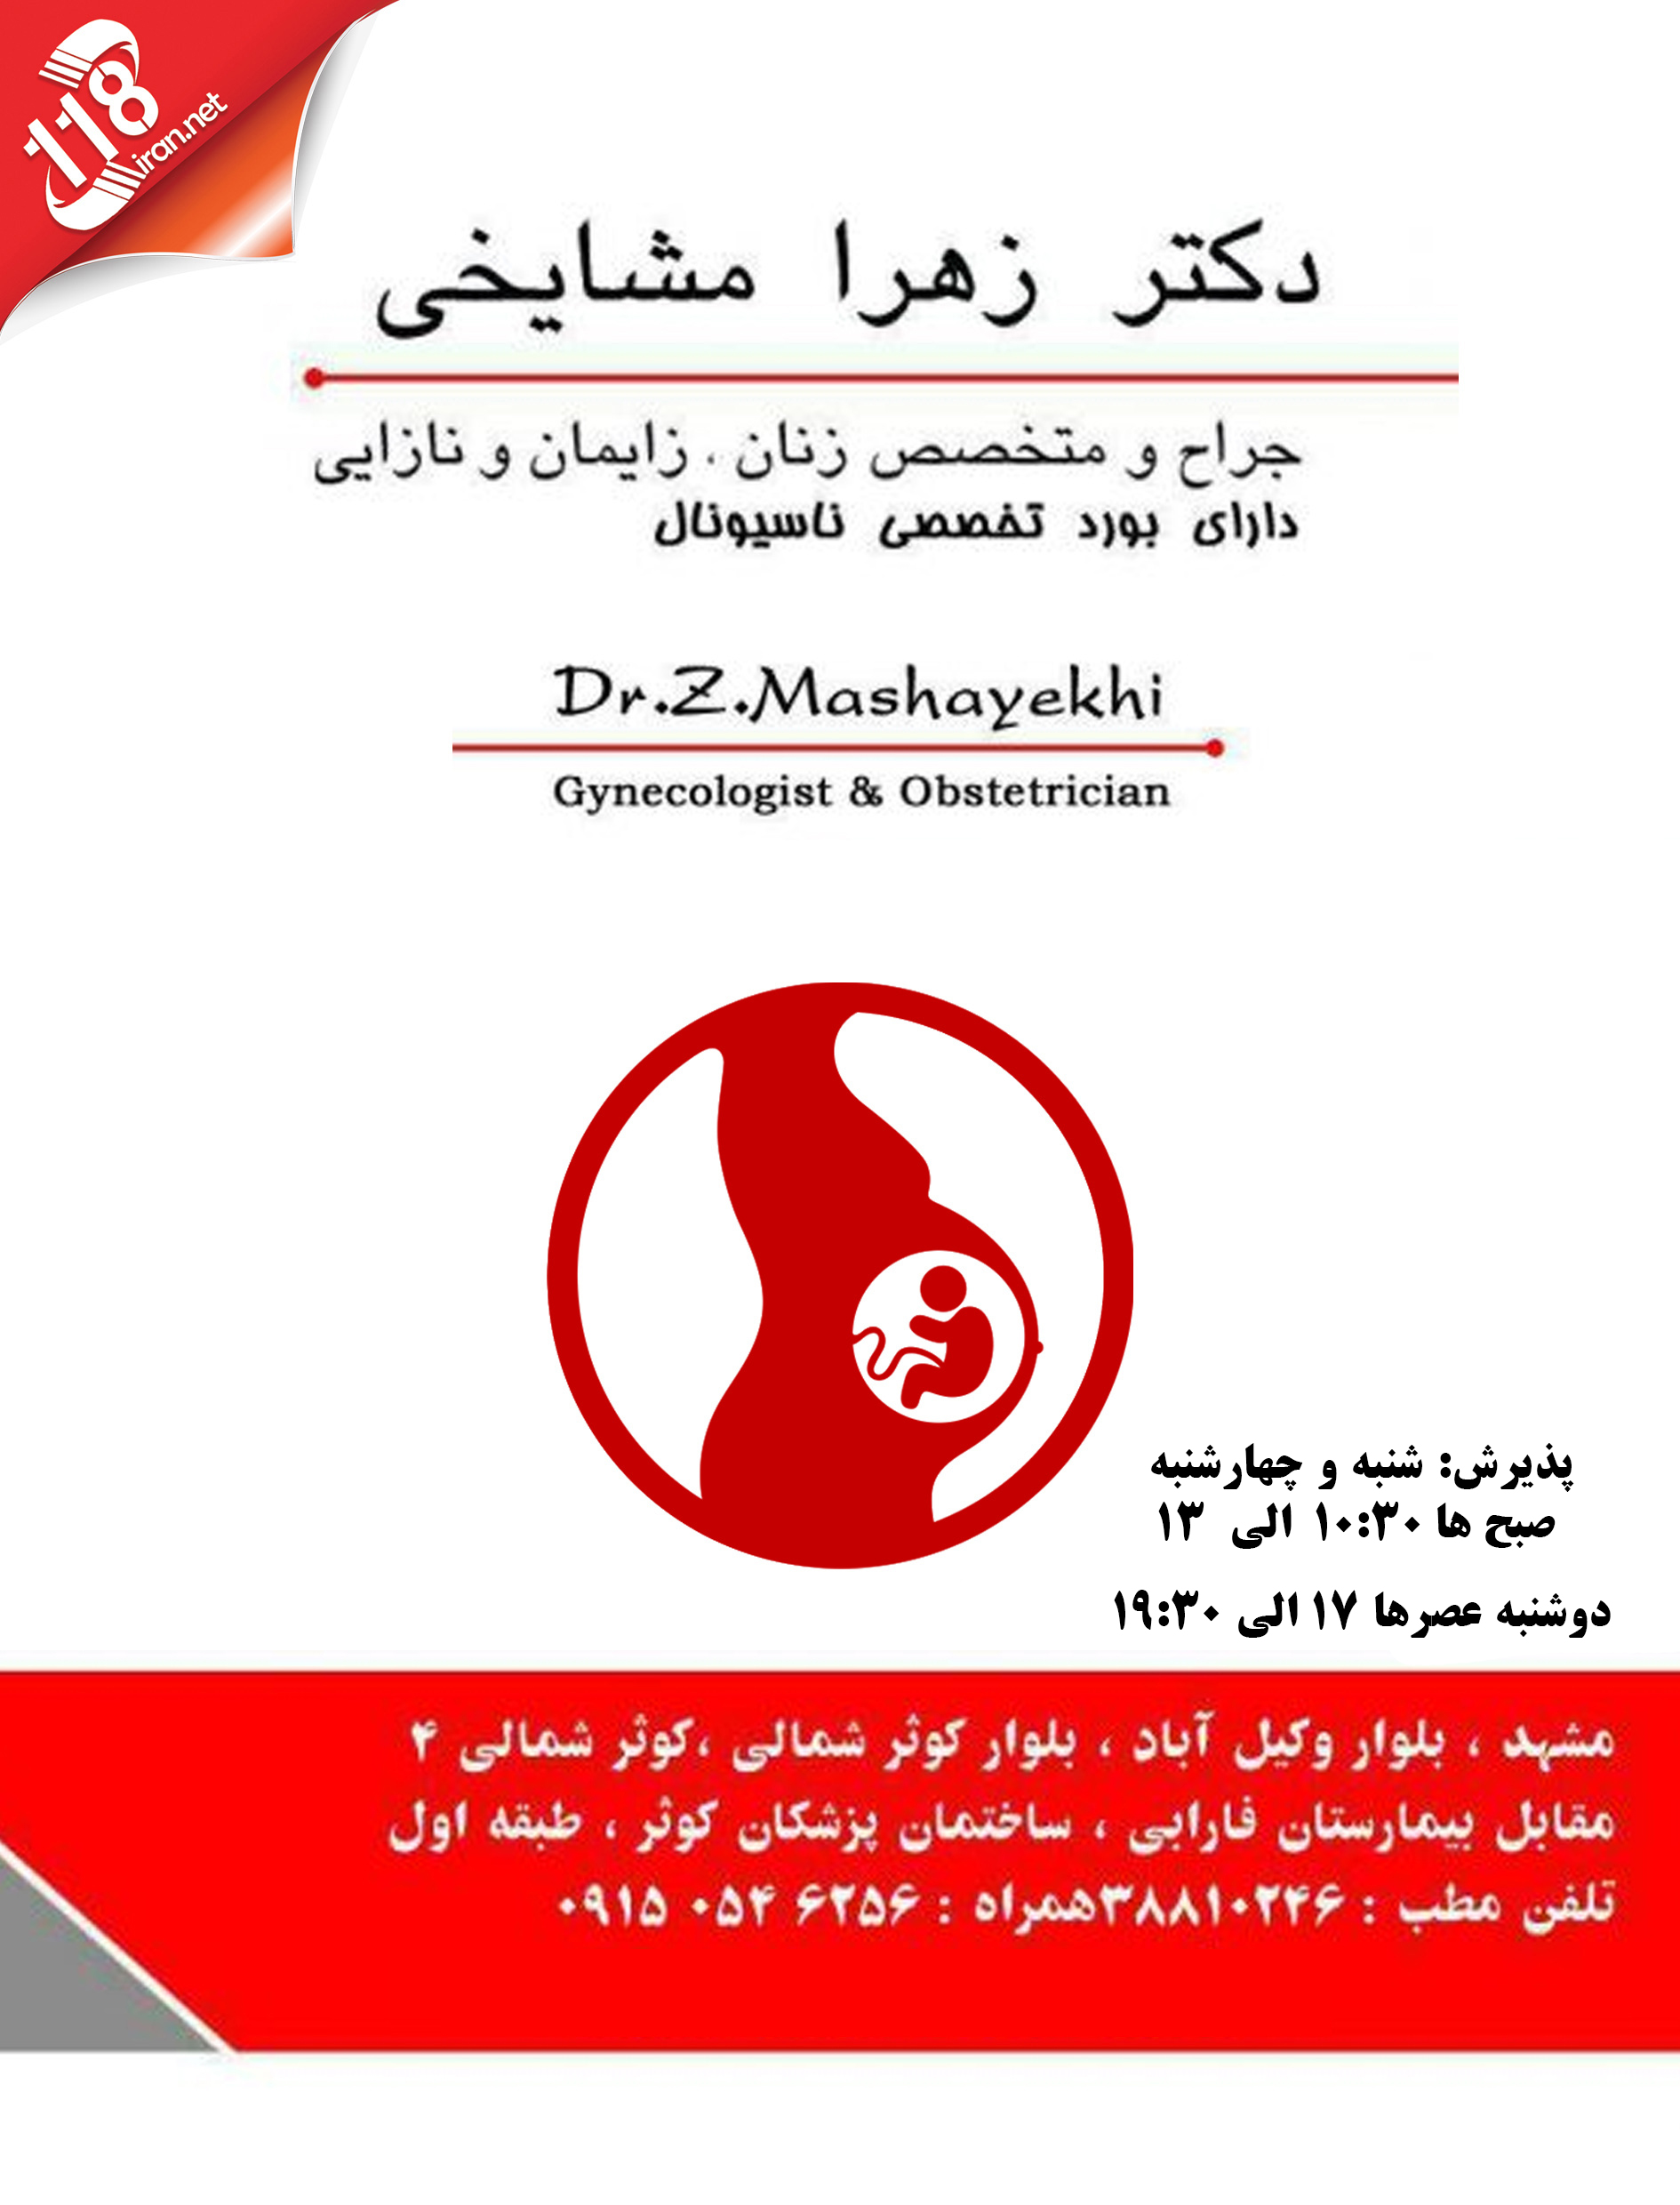  دکتر زهرا مشایخی در مشهد 